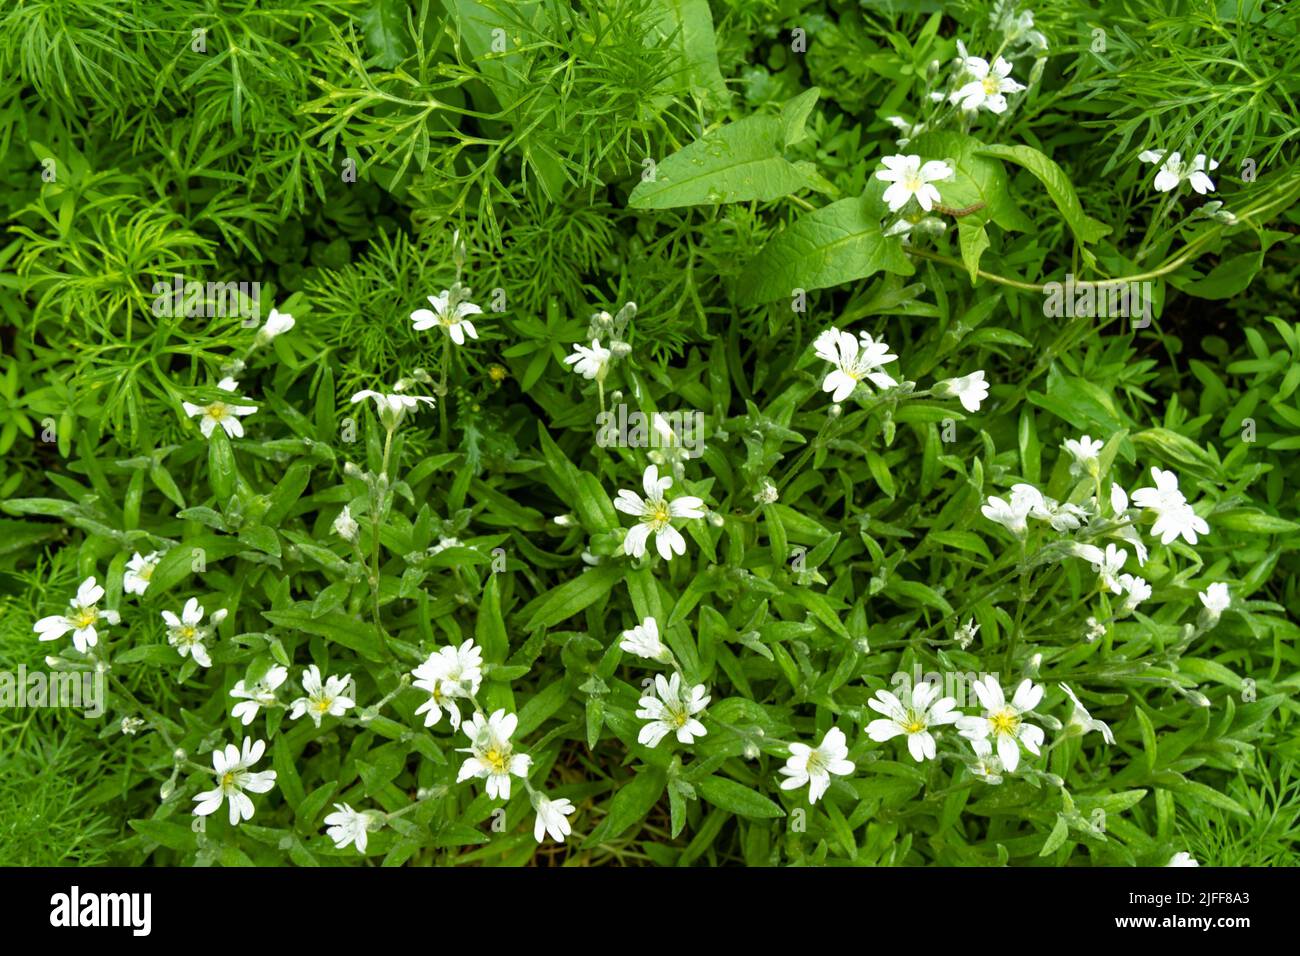 Hellgrün flauschig grün flacher Hintergrund, mit kleinen weißen zarten Blumen große Kulisse für Ihre Kopie Platz Stockfoto